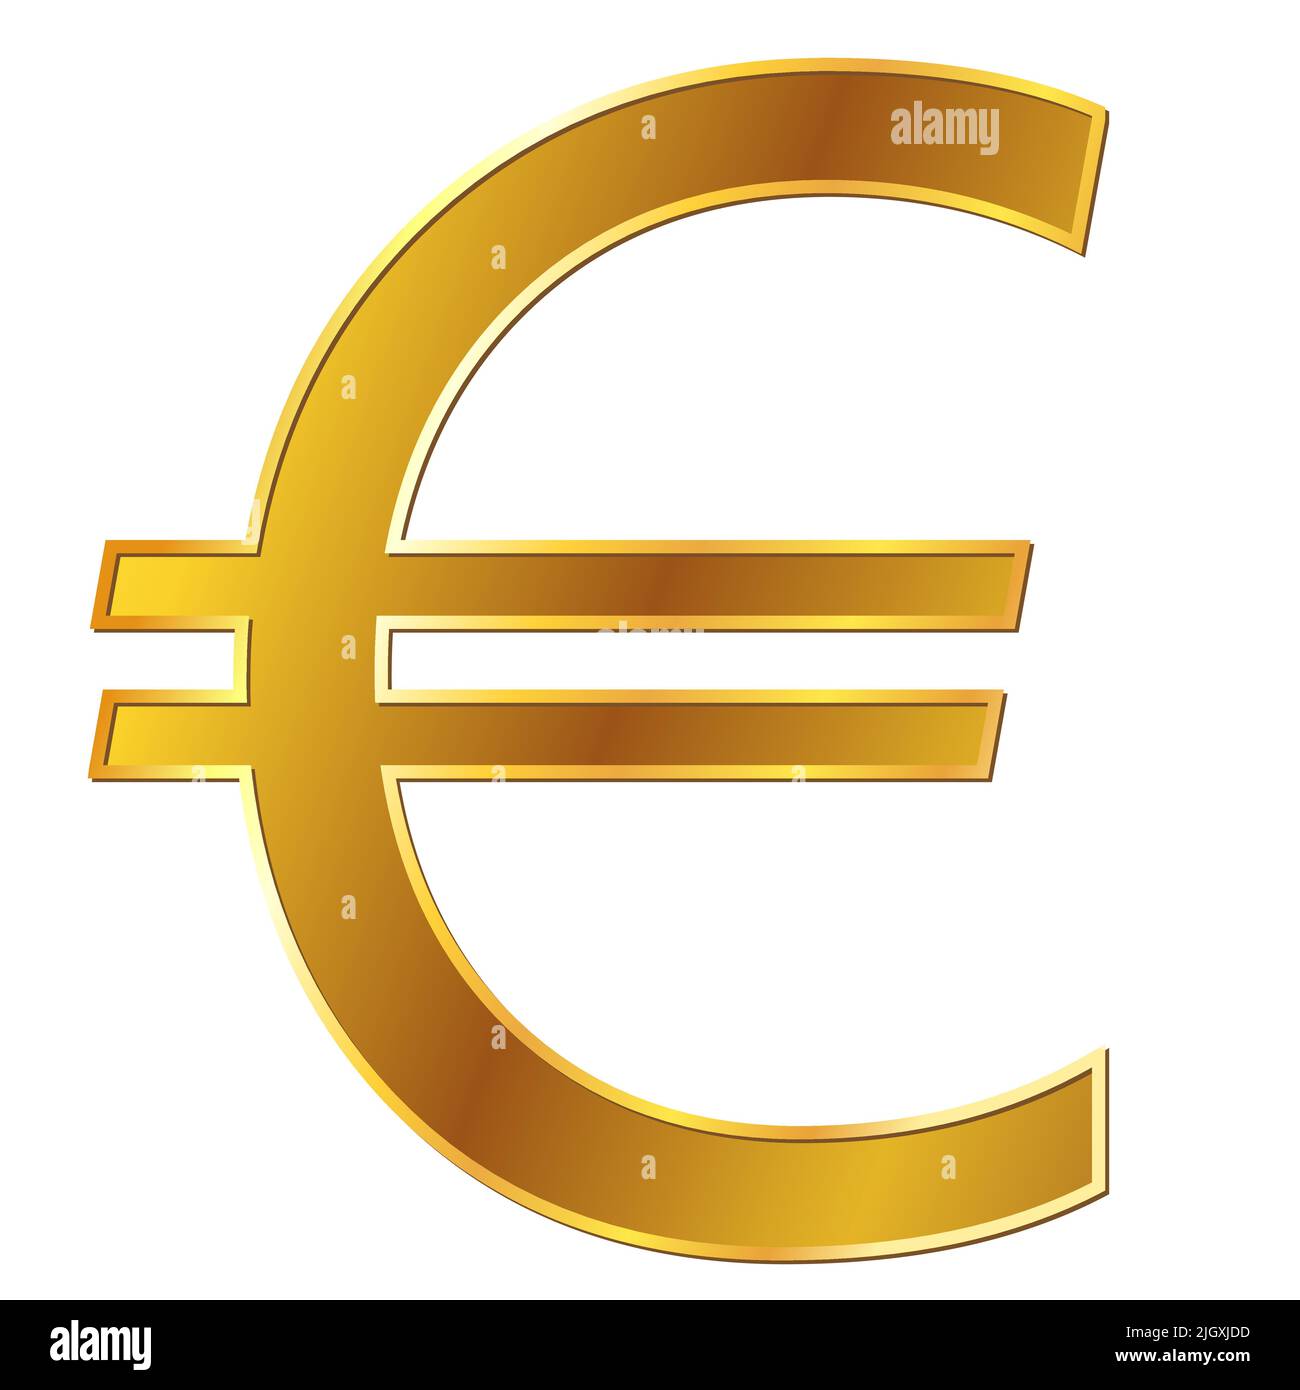 Unione europea euro euro valuta oro segno vista frontale isolato su sfondo bianco. Moneta della Banca centrale europea. Illustrazione vettoriale. Illustrazione Vettoriale